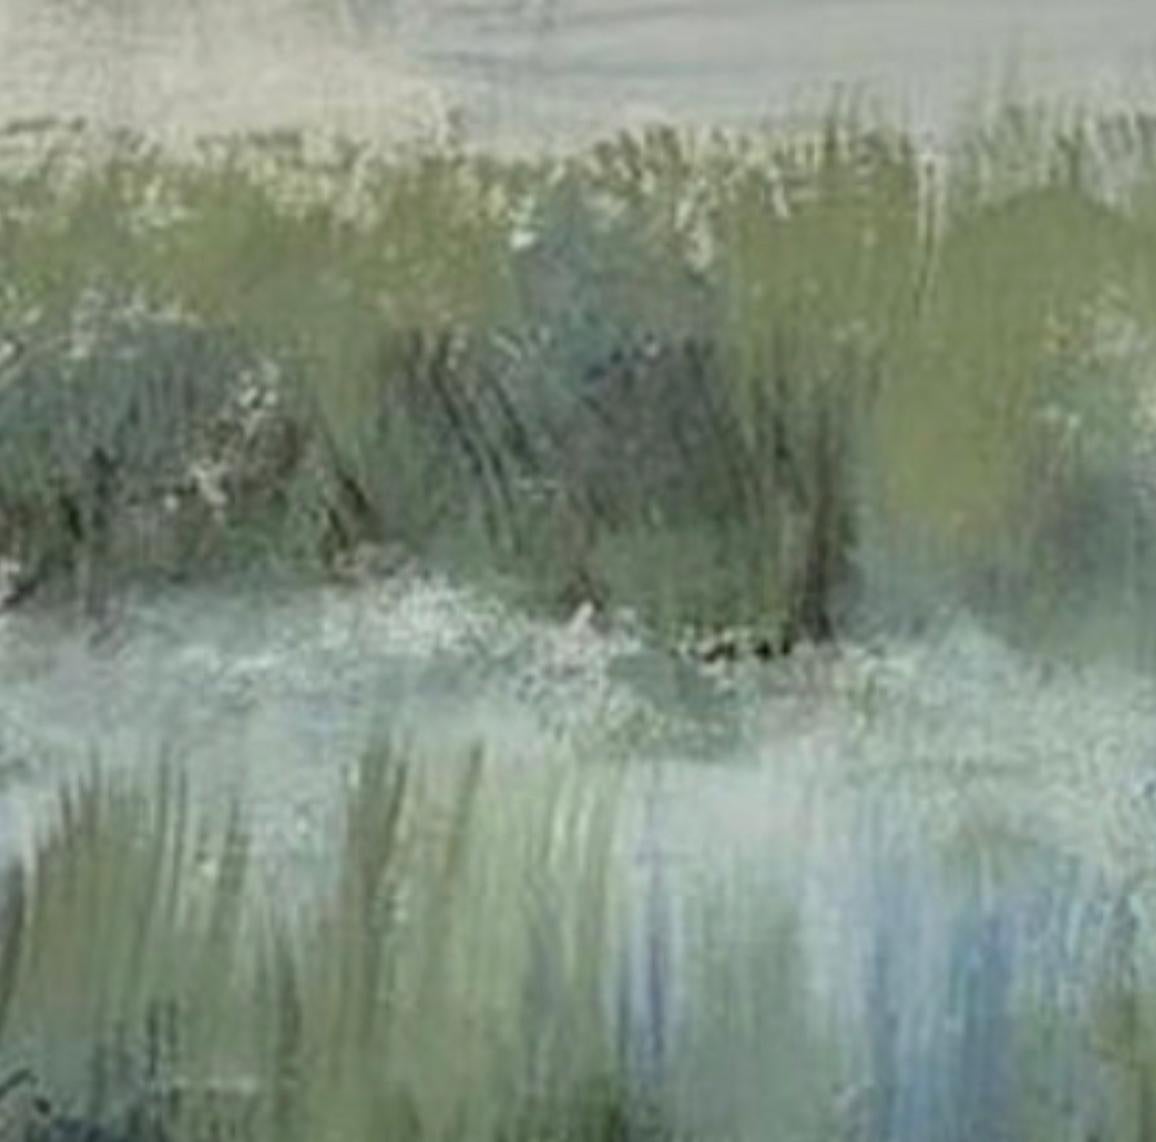 Zeitgenössisches Marsch's brim-Gemälde, grün, blau, weiß (Grau), Abstract Painting, von Juanita Bellavance 